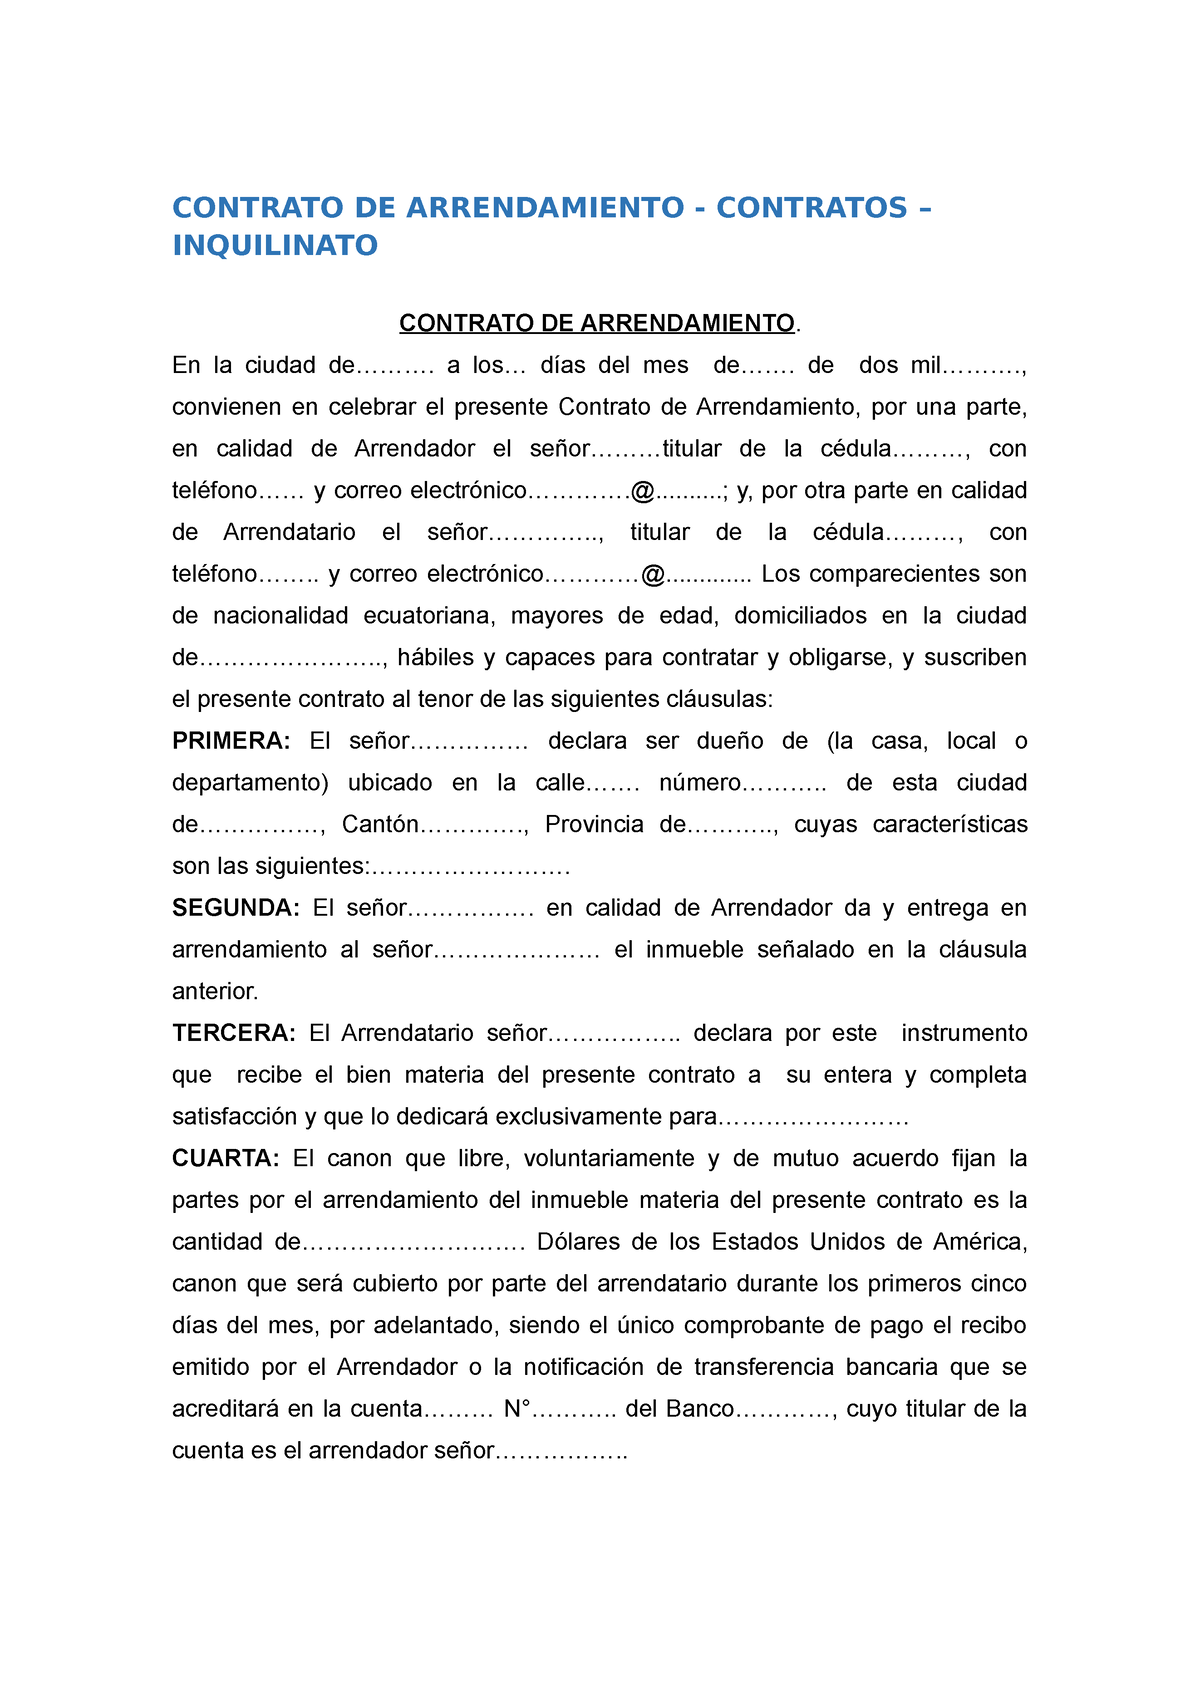 Contrato De Arrendamiento Contrato De Arrendamiento Contratos Inquilinato Contrato De 7177